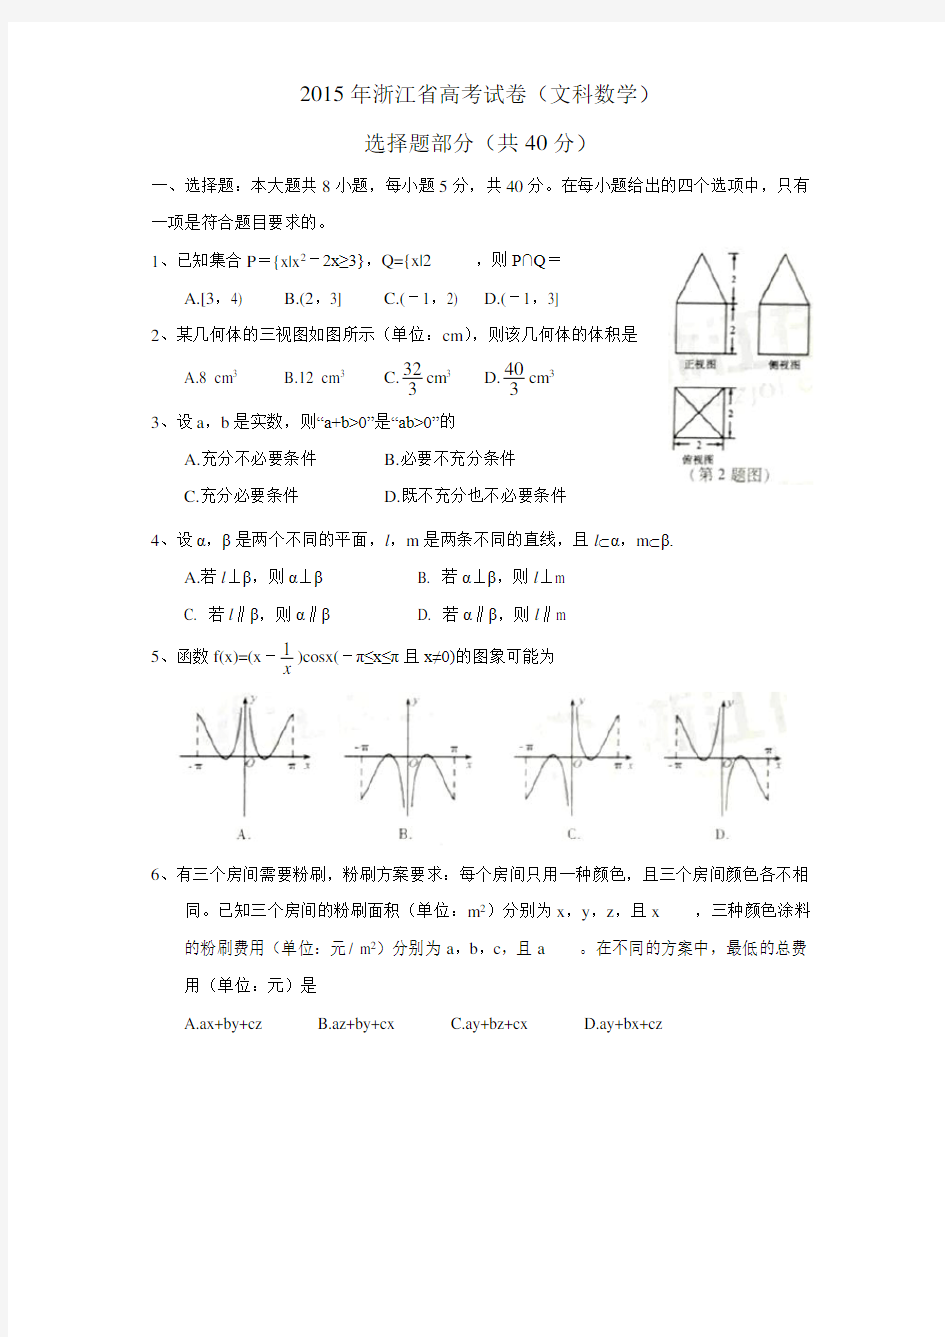 2015年浙江省高考试卷(文科数学)含答案